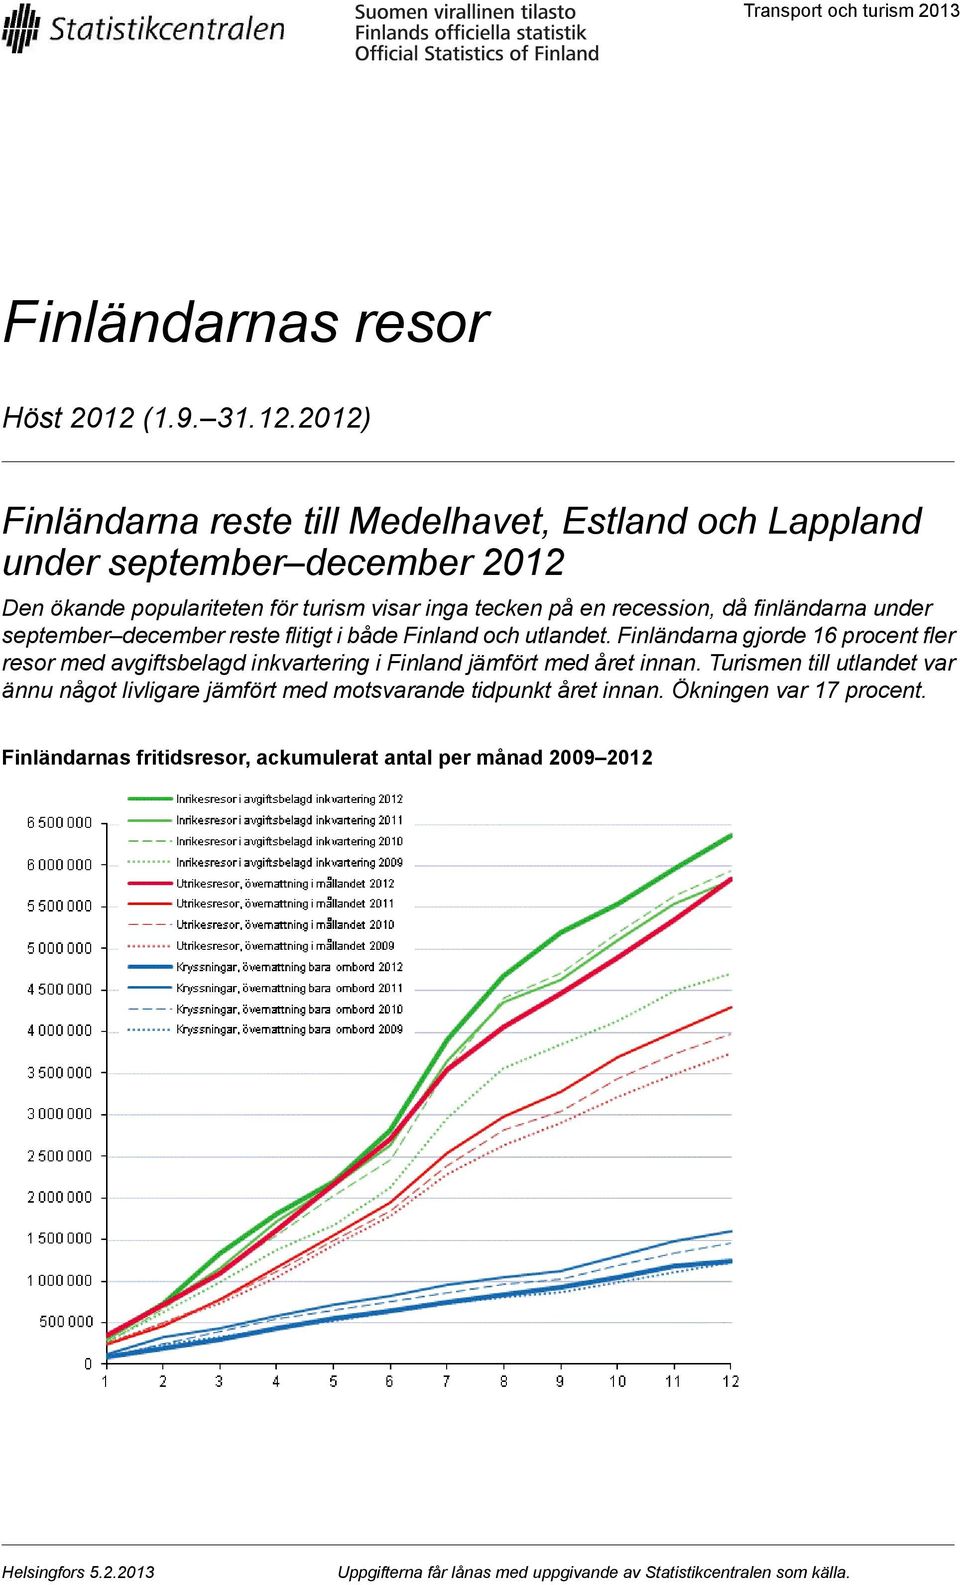 procent fler resor med avgiftsbelagd inkvartering i Finland jämfört med året innan Turismen till utlandet var ännu något livligare jämfört med motsvarande tidpunkt året